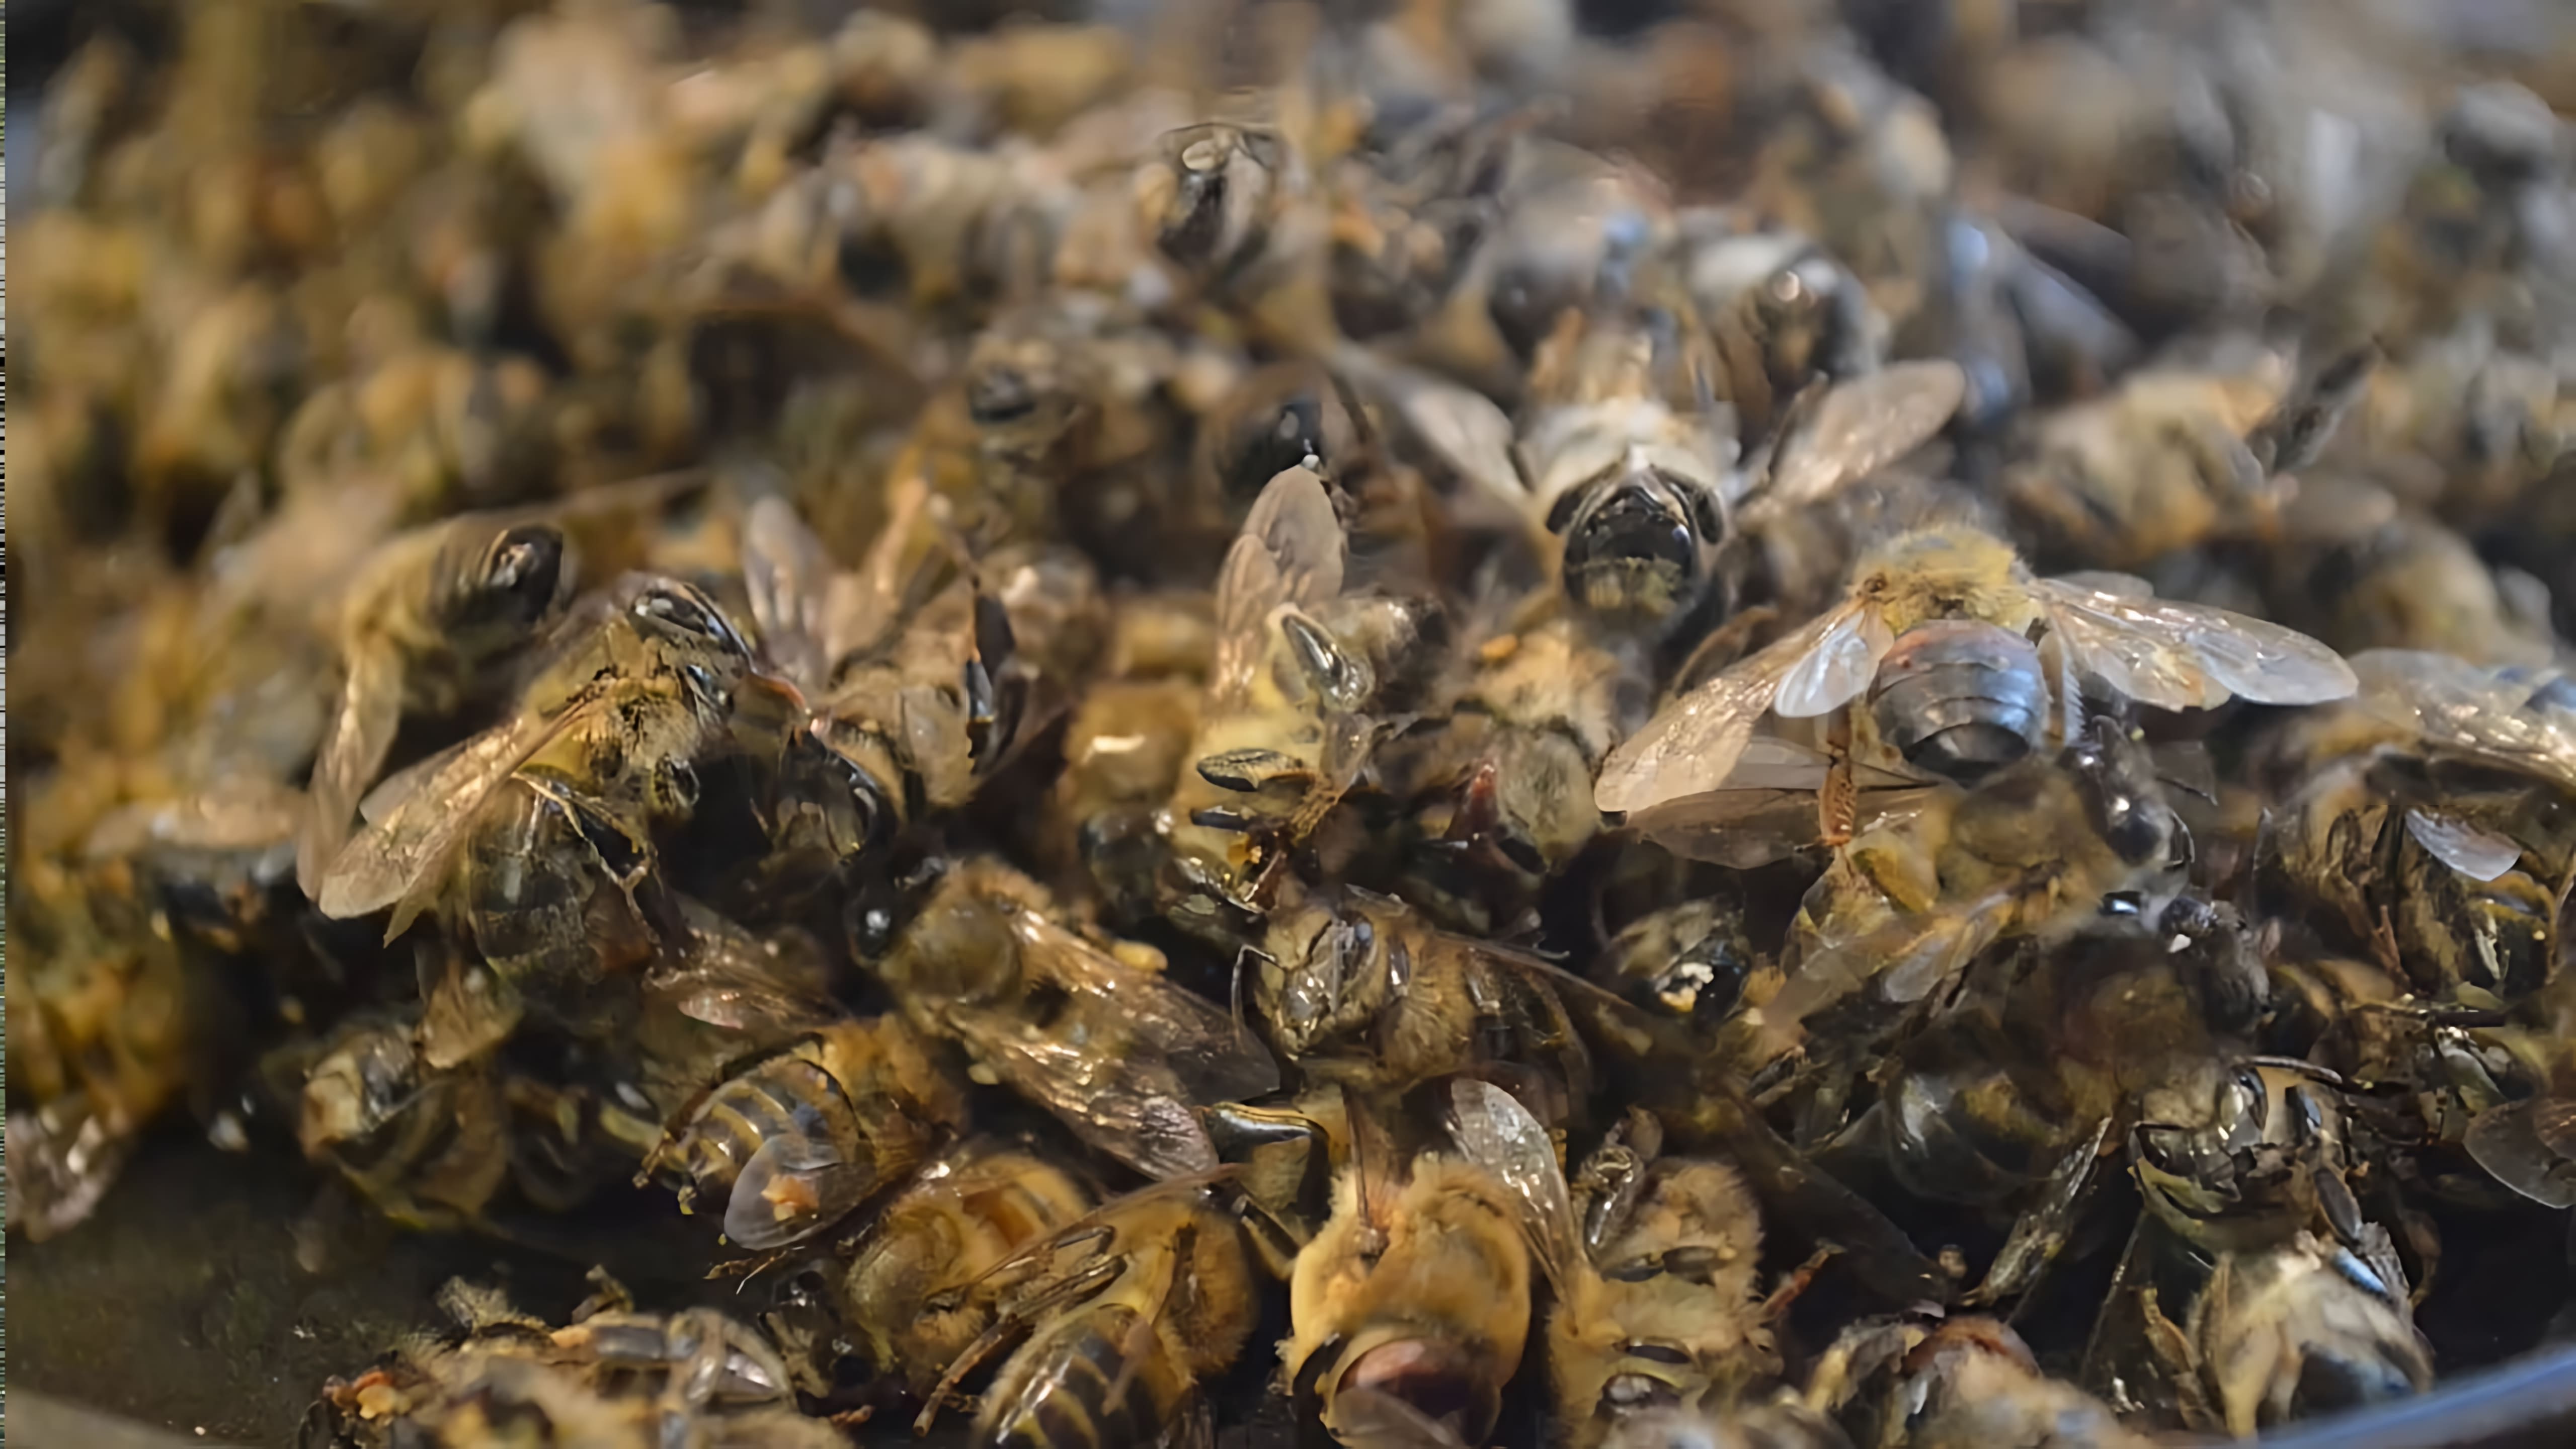 Пчелиный подмор - это тельца мертвых пчел, которые остаются после зимовки